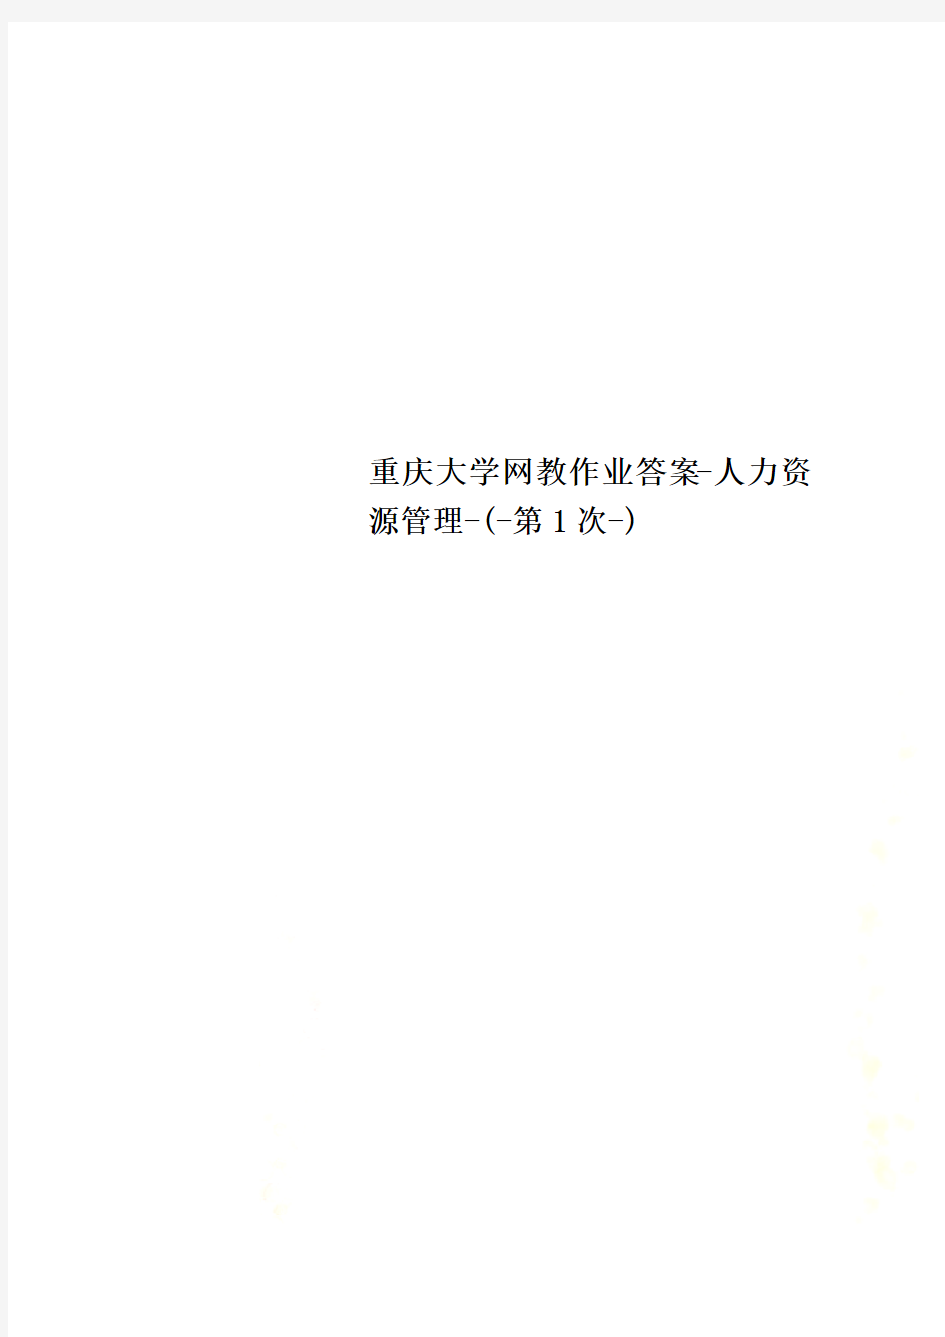 重庆大学网教作业答案-人力资源管理-(-第1次-)